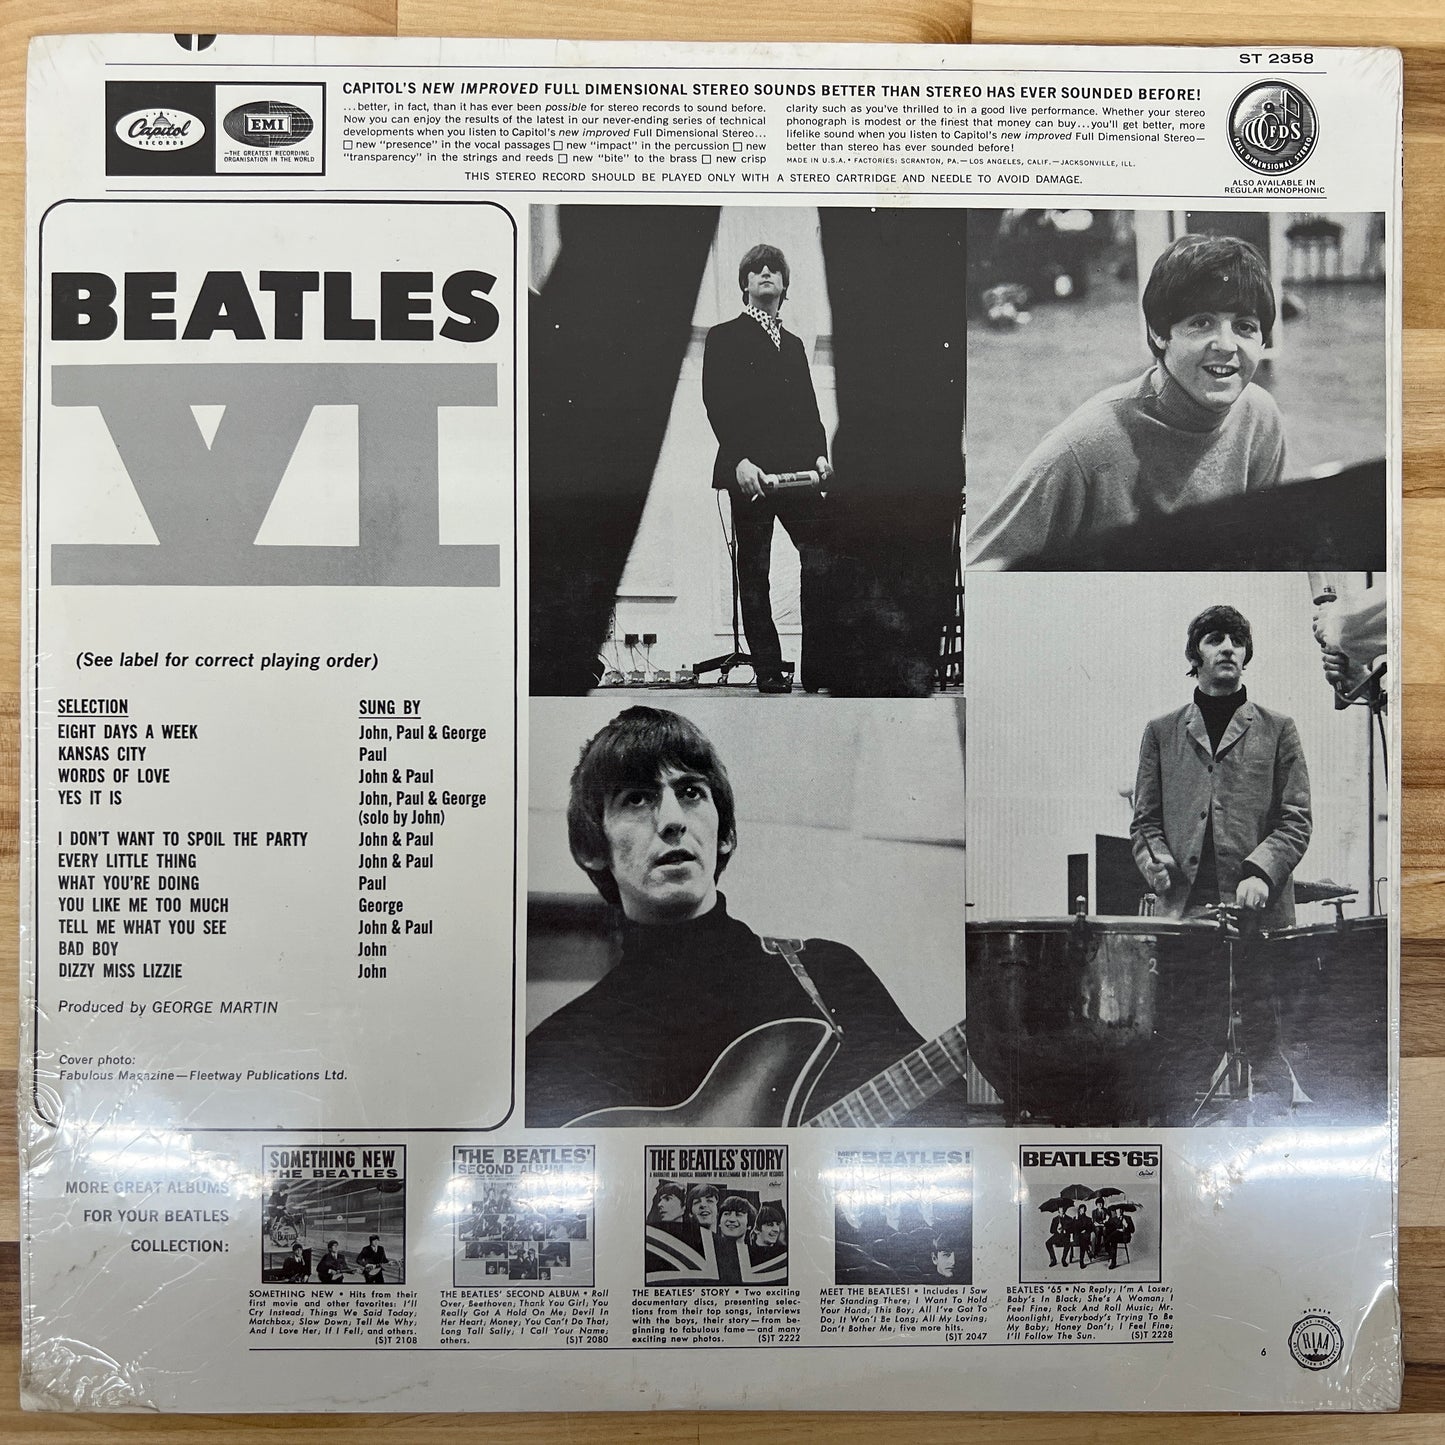 Die Beatles – Beatles VI – LP